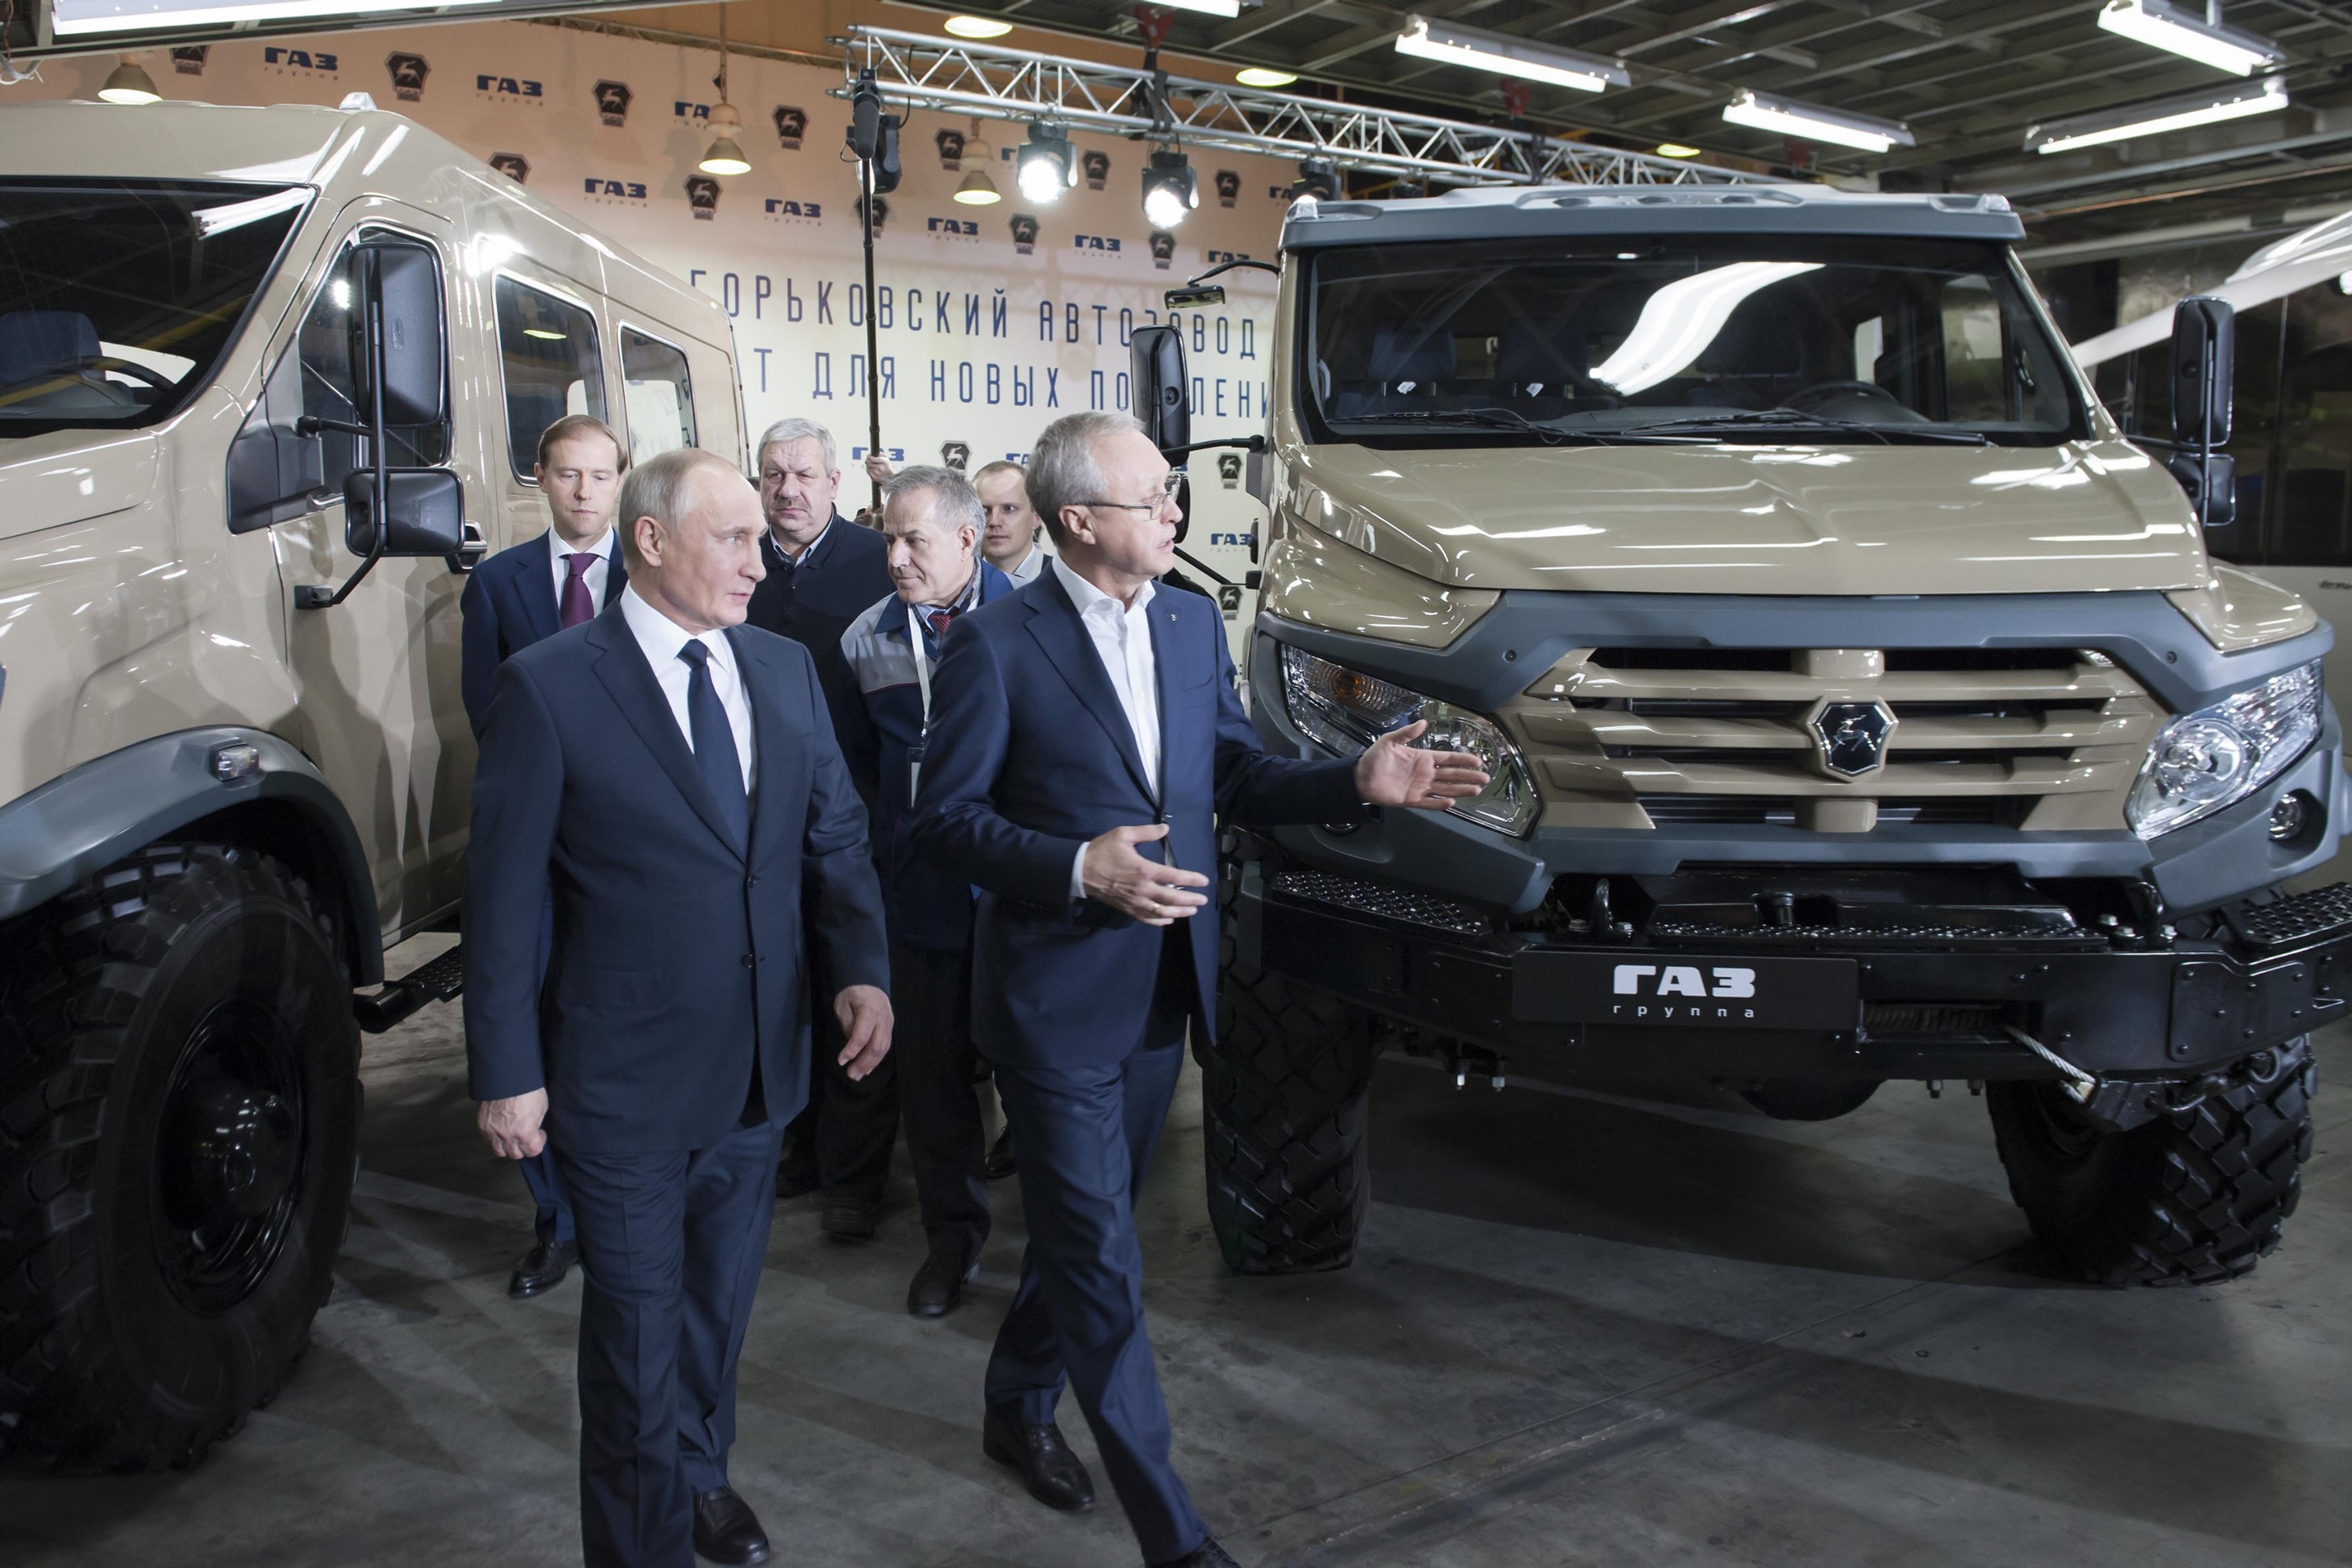 Глава государства осмотрел автомобили, которые выпускают на «ГАЗе», в том числе две новинки: «ГАЗон NEXT» и «Газель NEXT» увеличенной грузоподъемности 